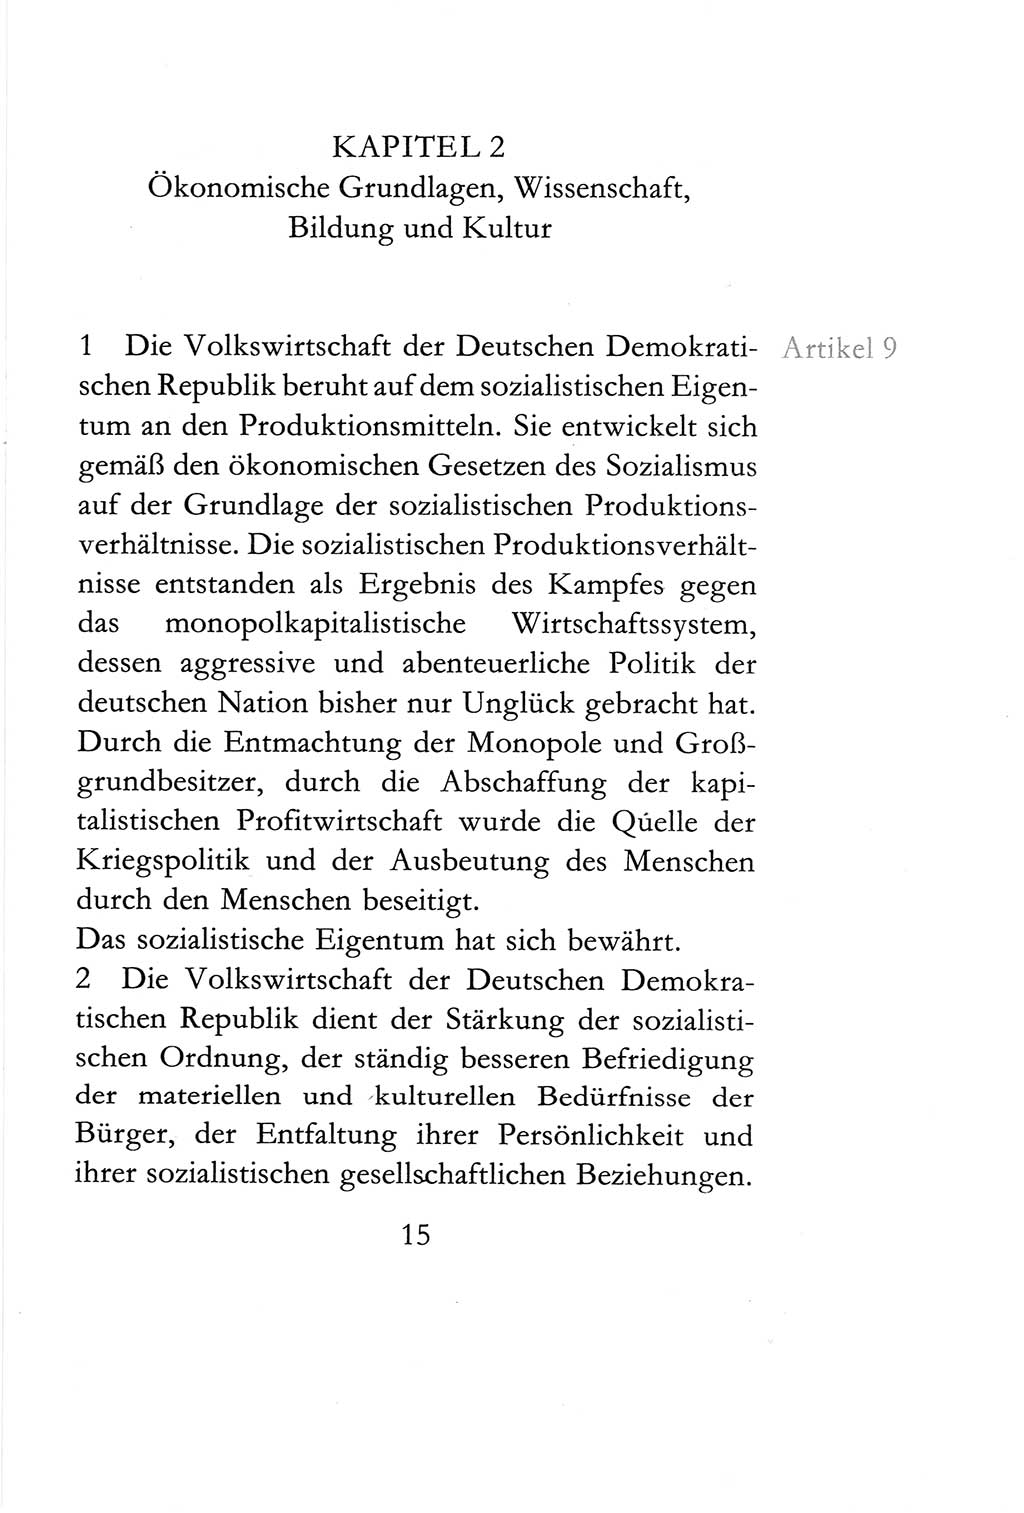 Verfassung der Deutschen Demokratischen Republik (DDR) vom 6. April 1968, Seite 15 (Verf. DDR 1968, S. 15)